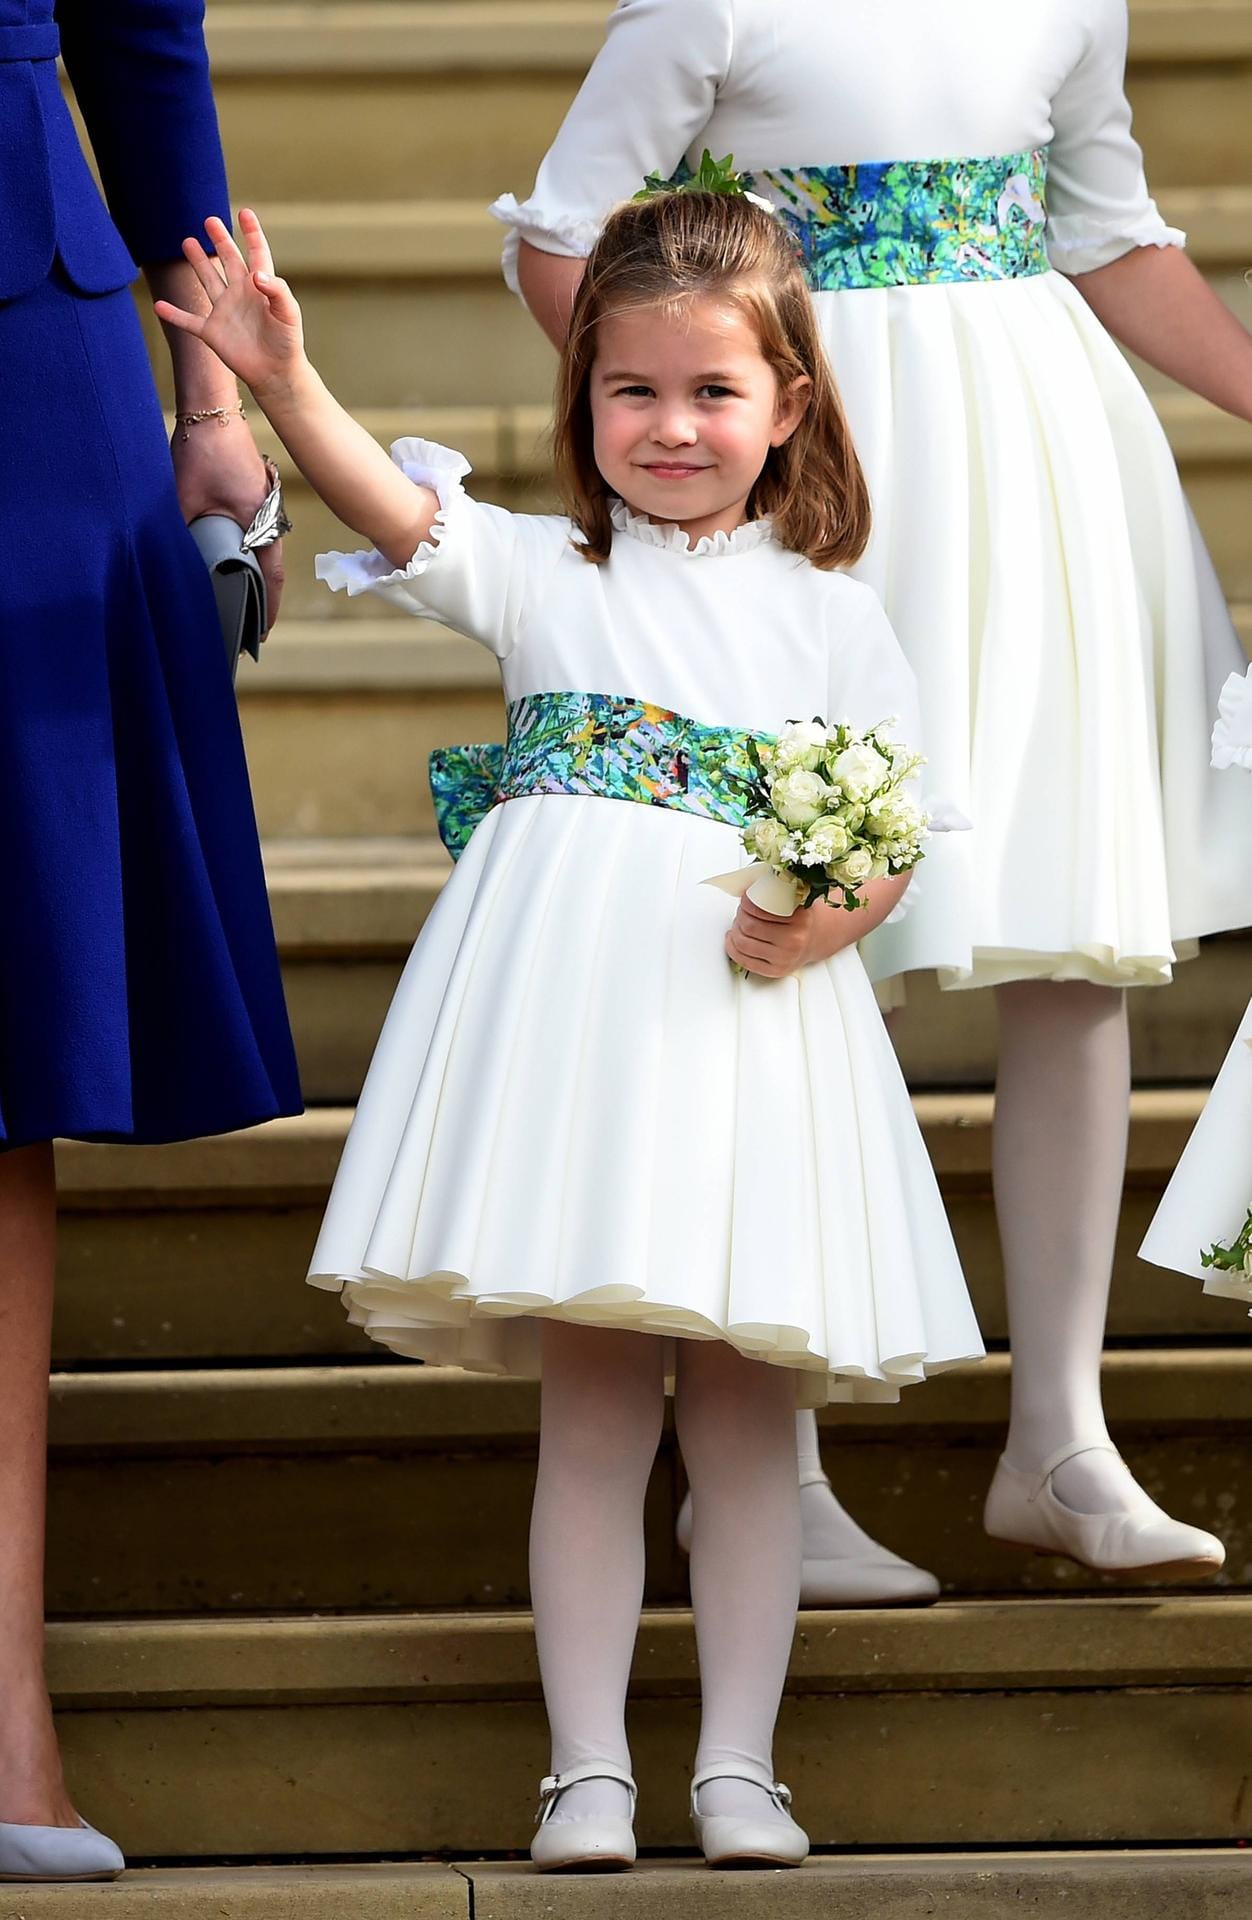 Prinzessin Charlotte: Am 2. Mai 2015 wurde die Tochter von Prinz William und Herzogin Kate geboren.